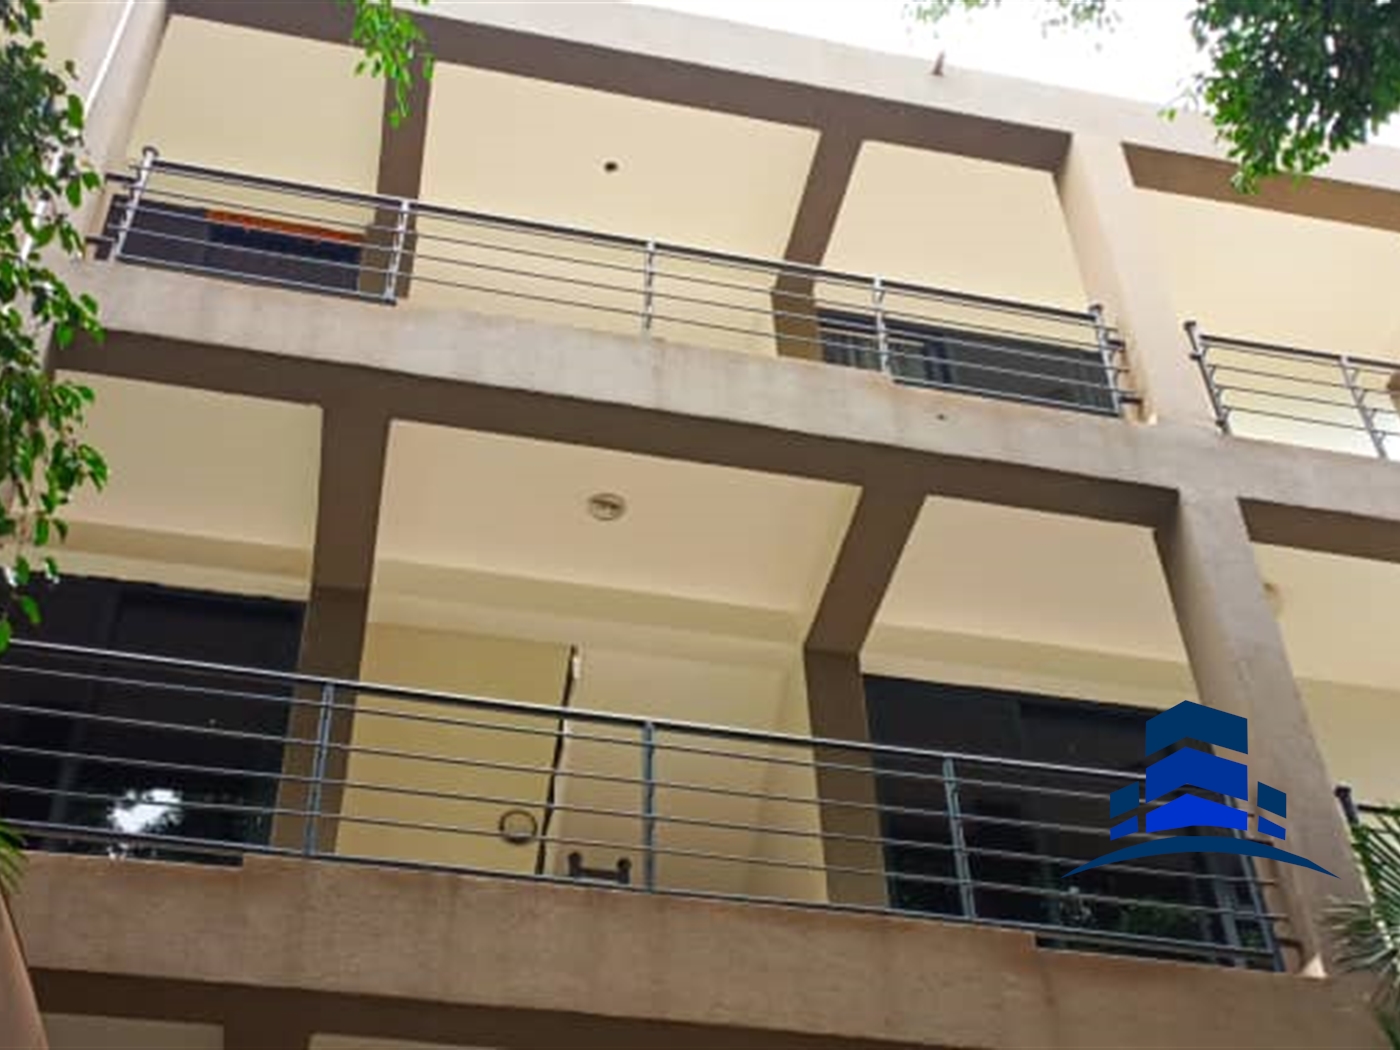 Apartment block for sale in Muyenga Kampala